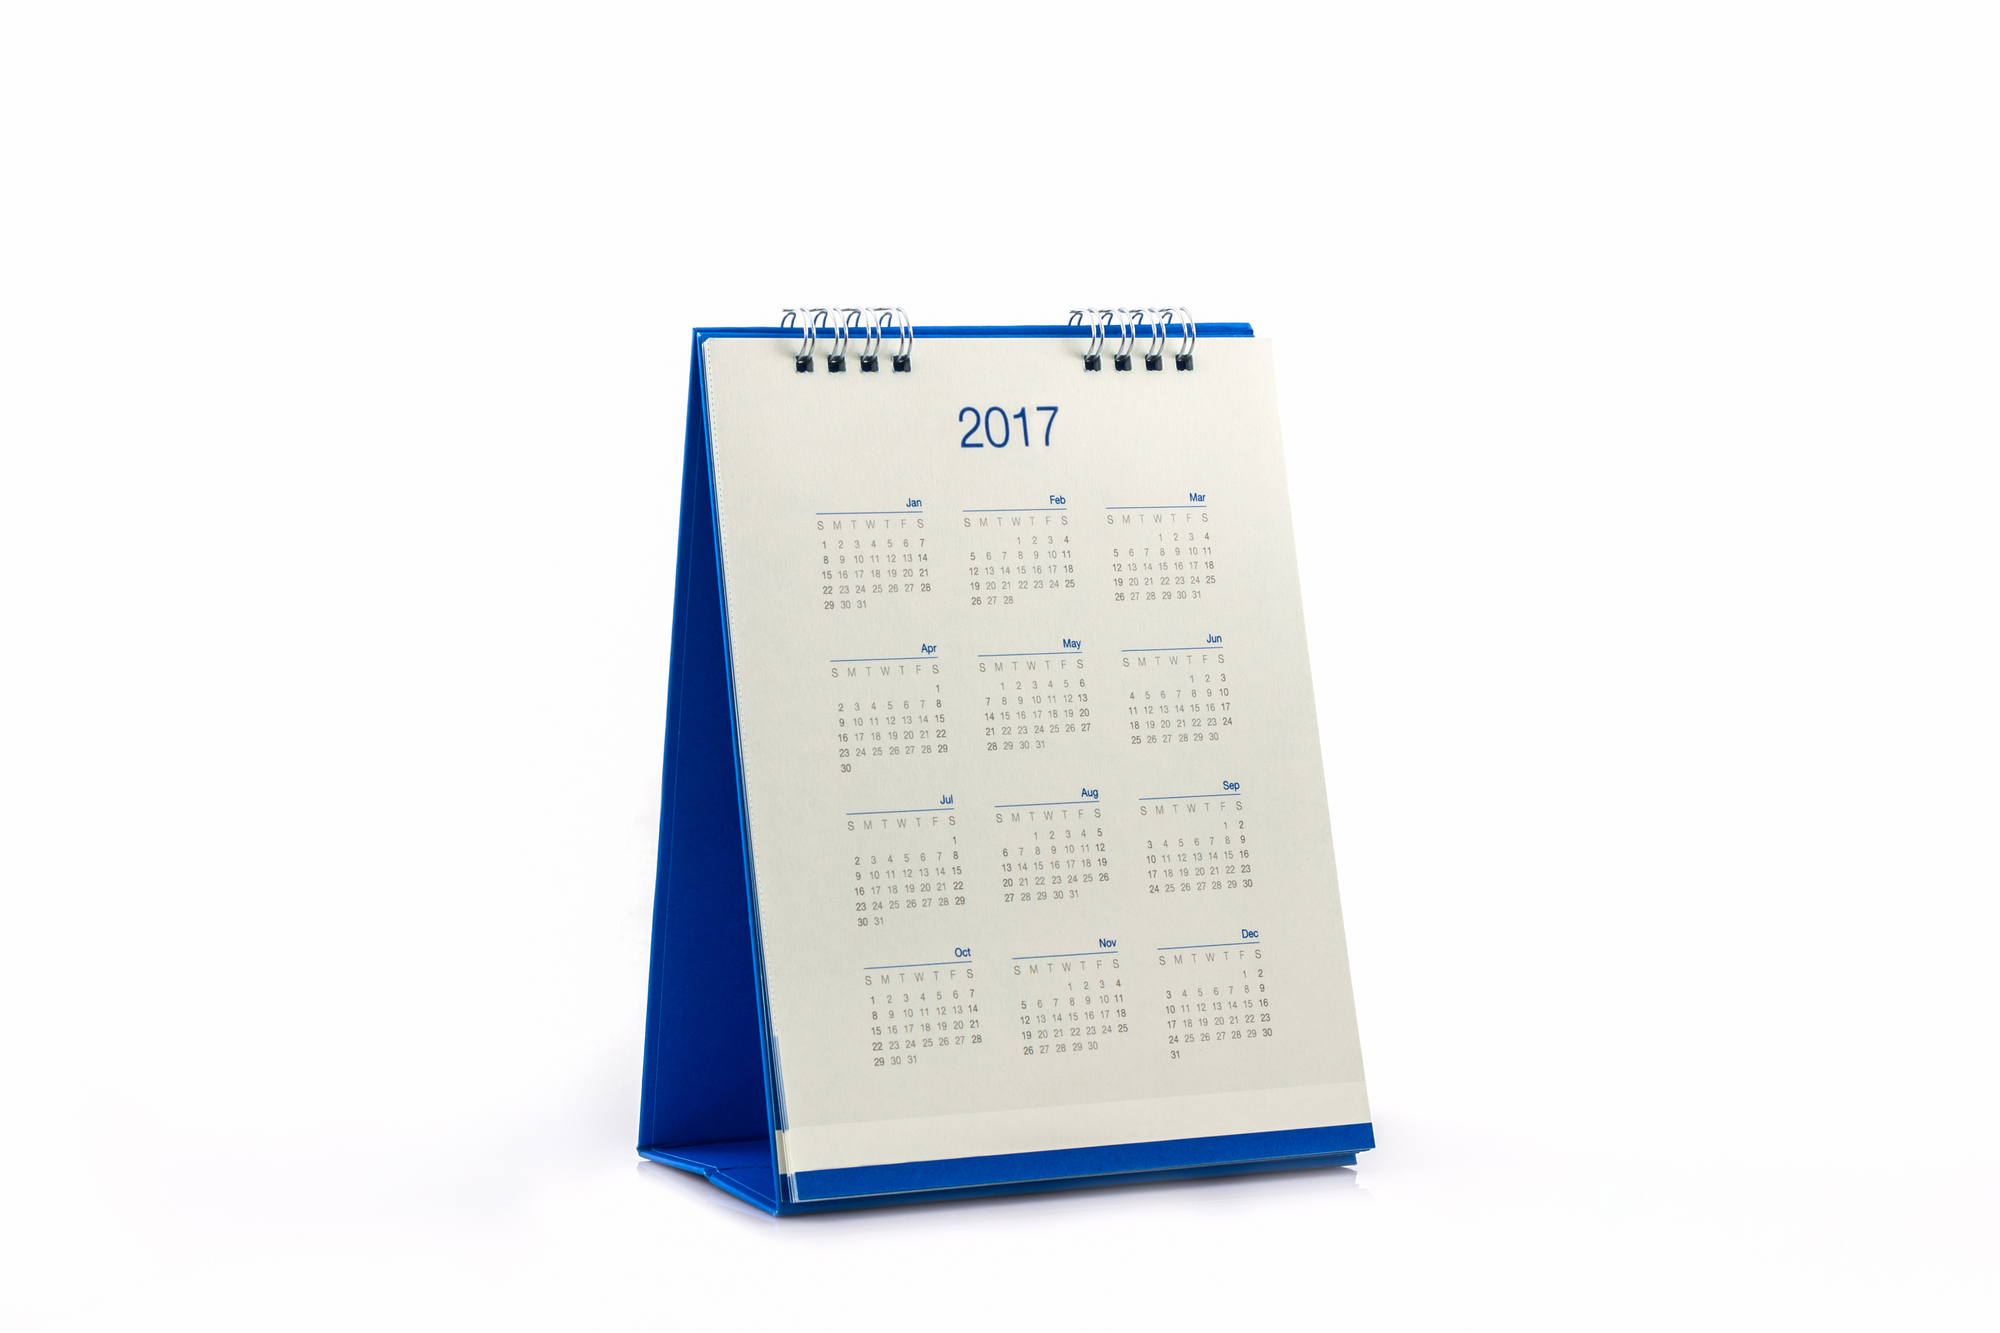 White paper desk spiral calendar 2017 on white background.